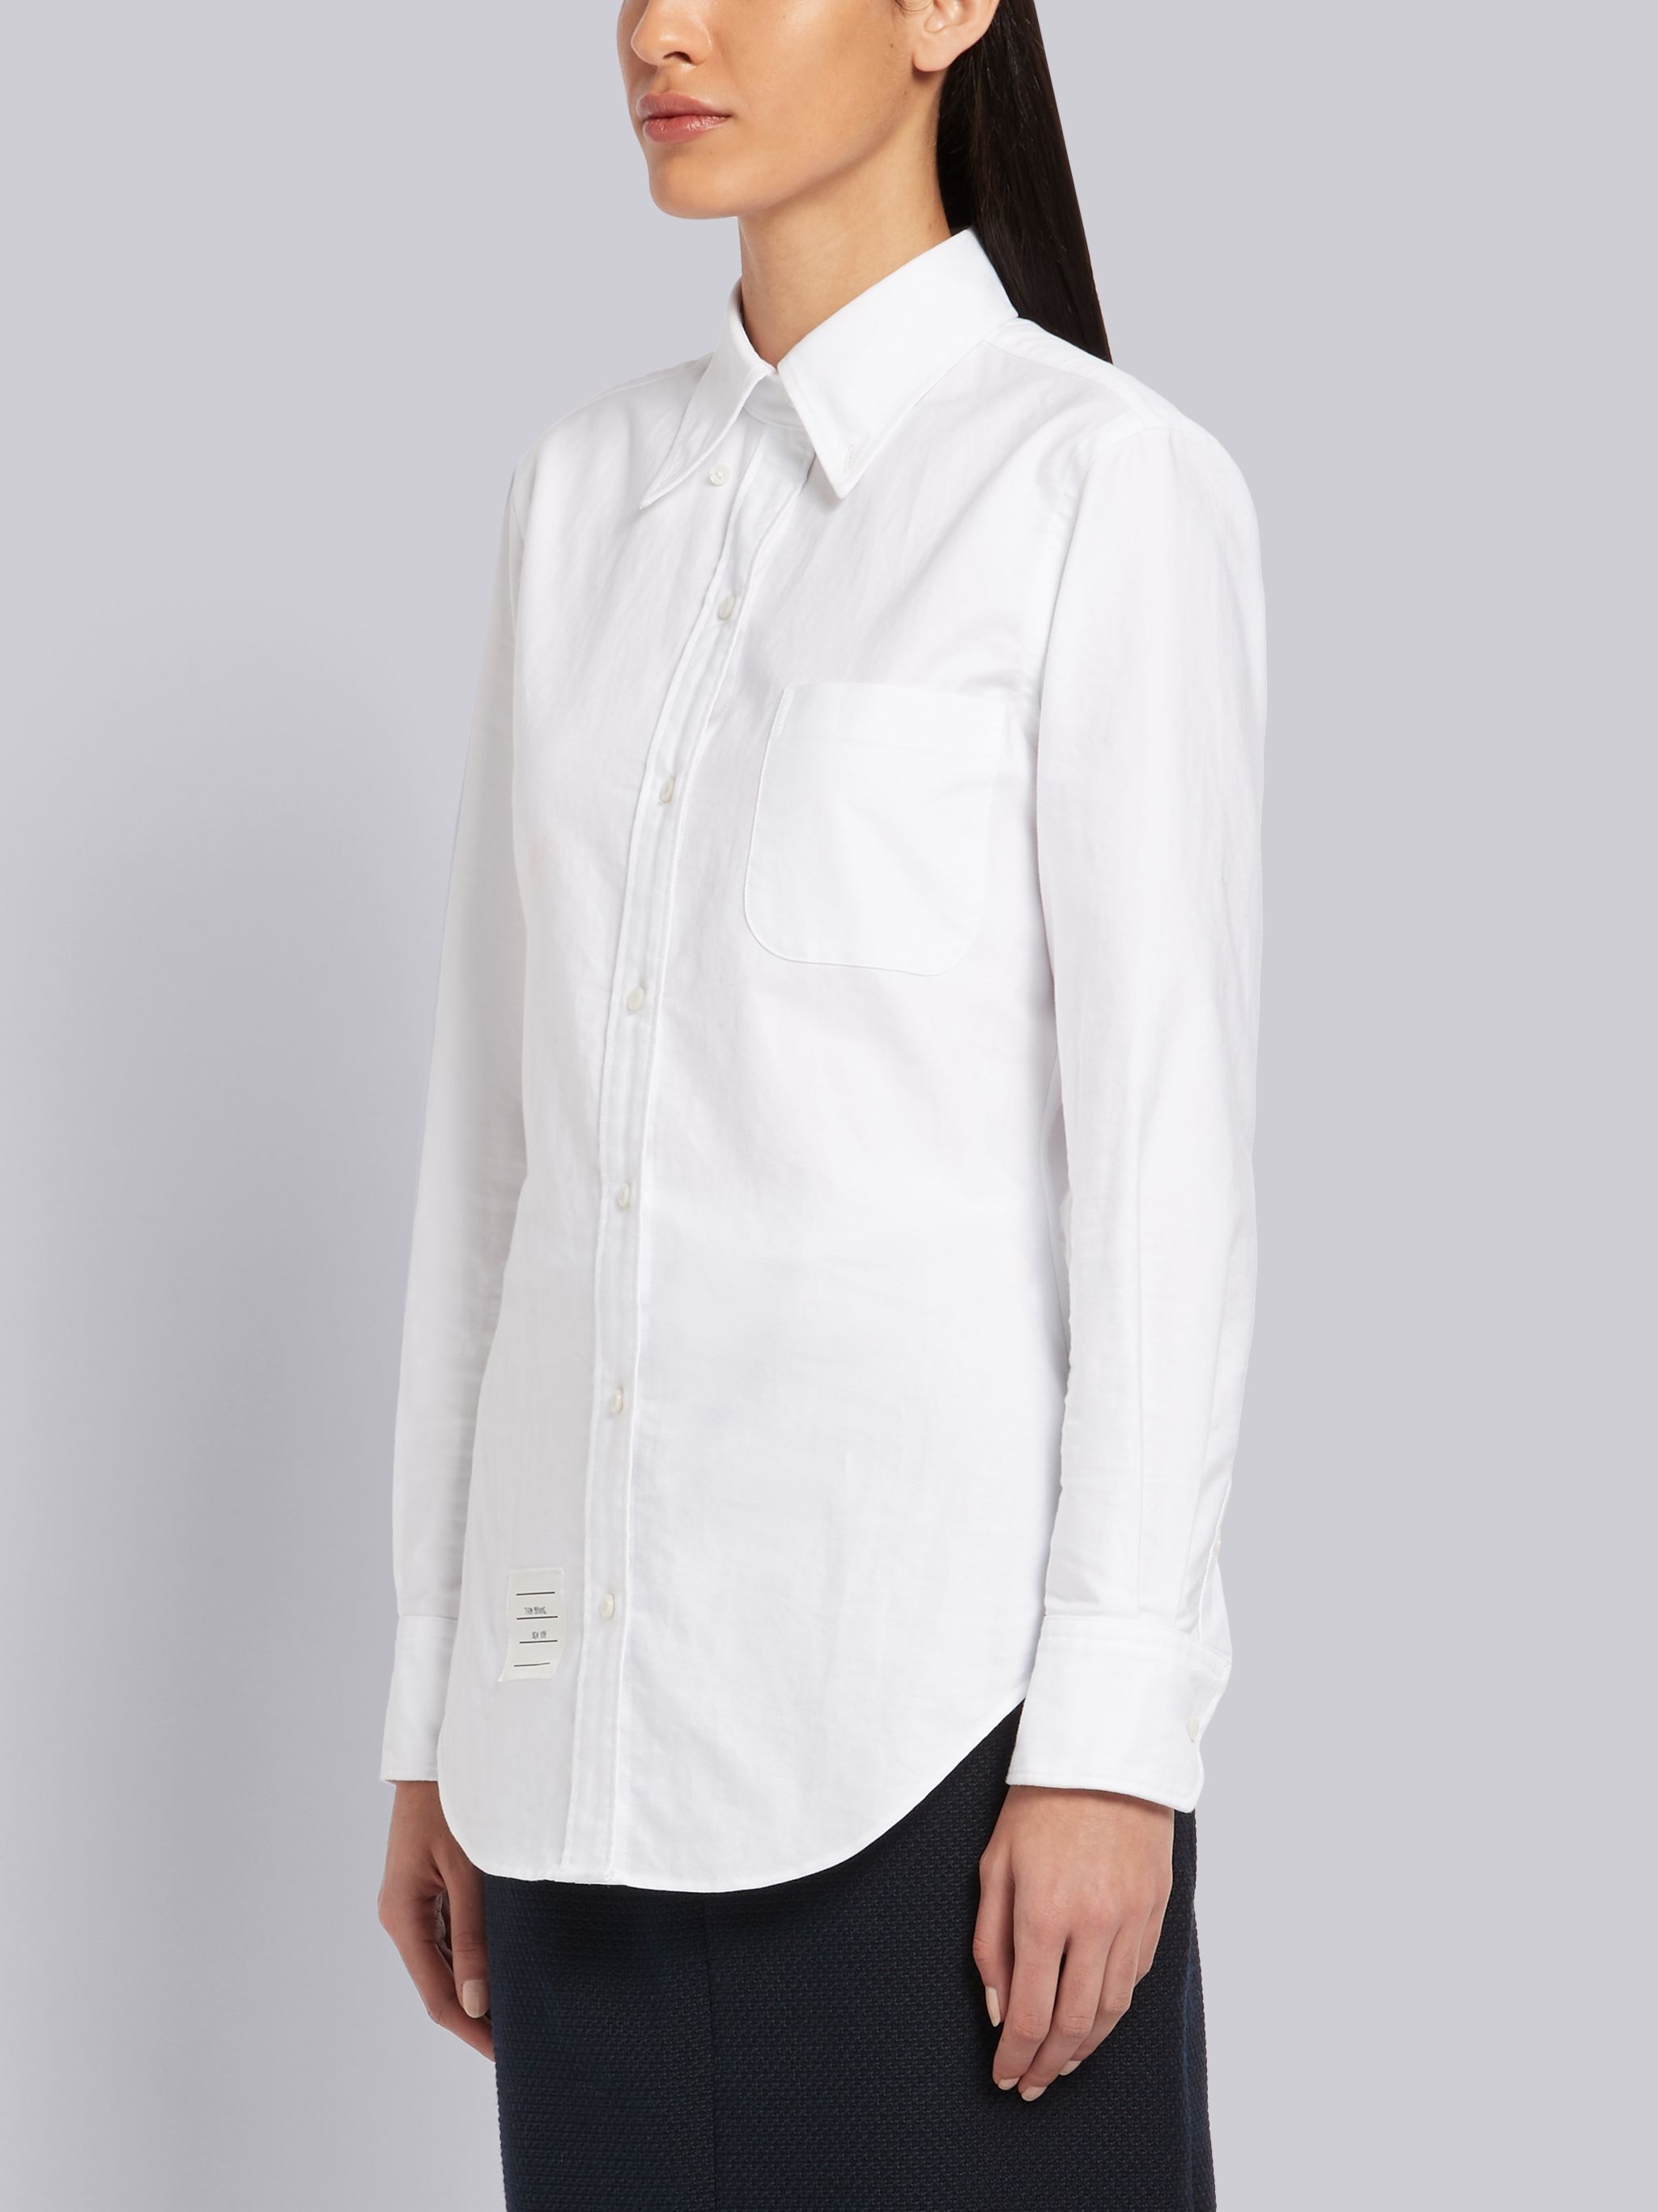 White Oxford RWB Tab Long Sleeve Shirt - 4